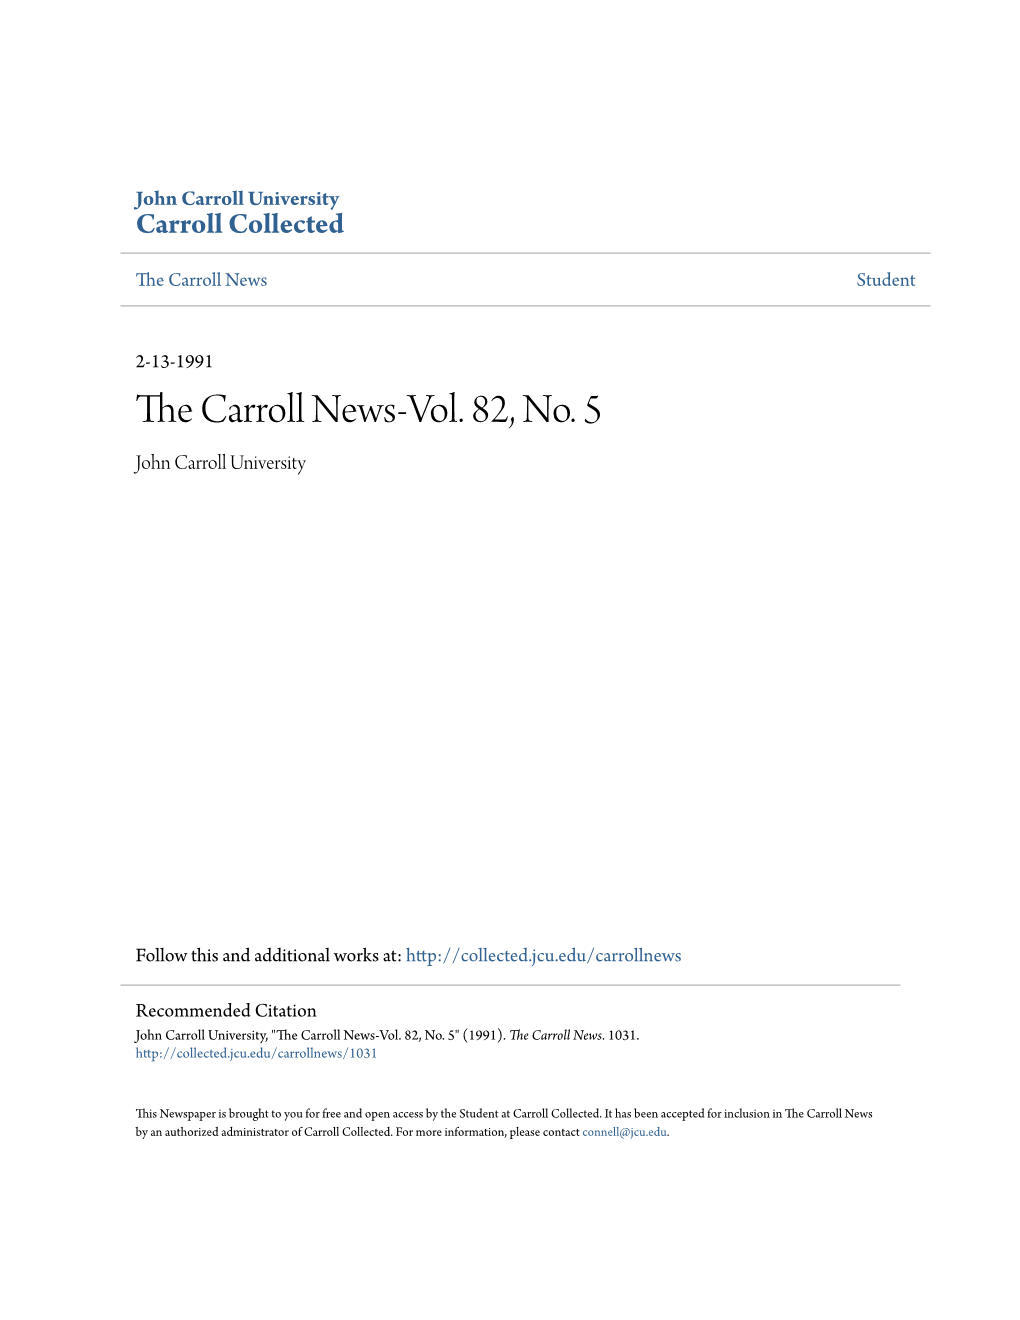 The Carroll News-Vol. 82, No. 5